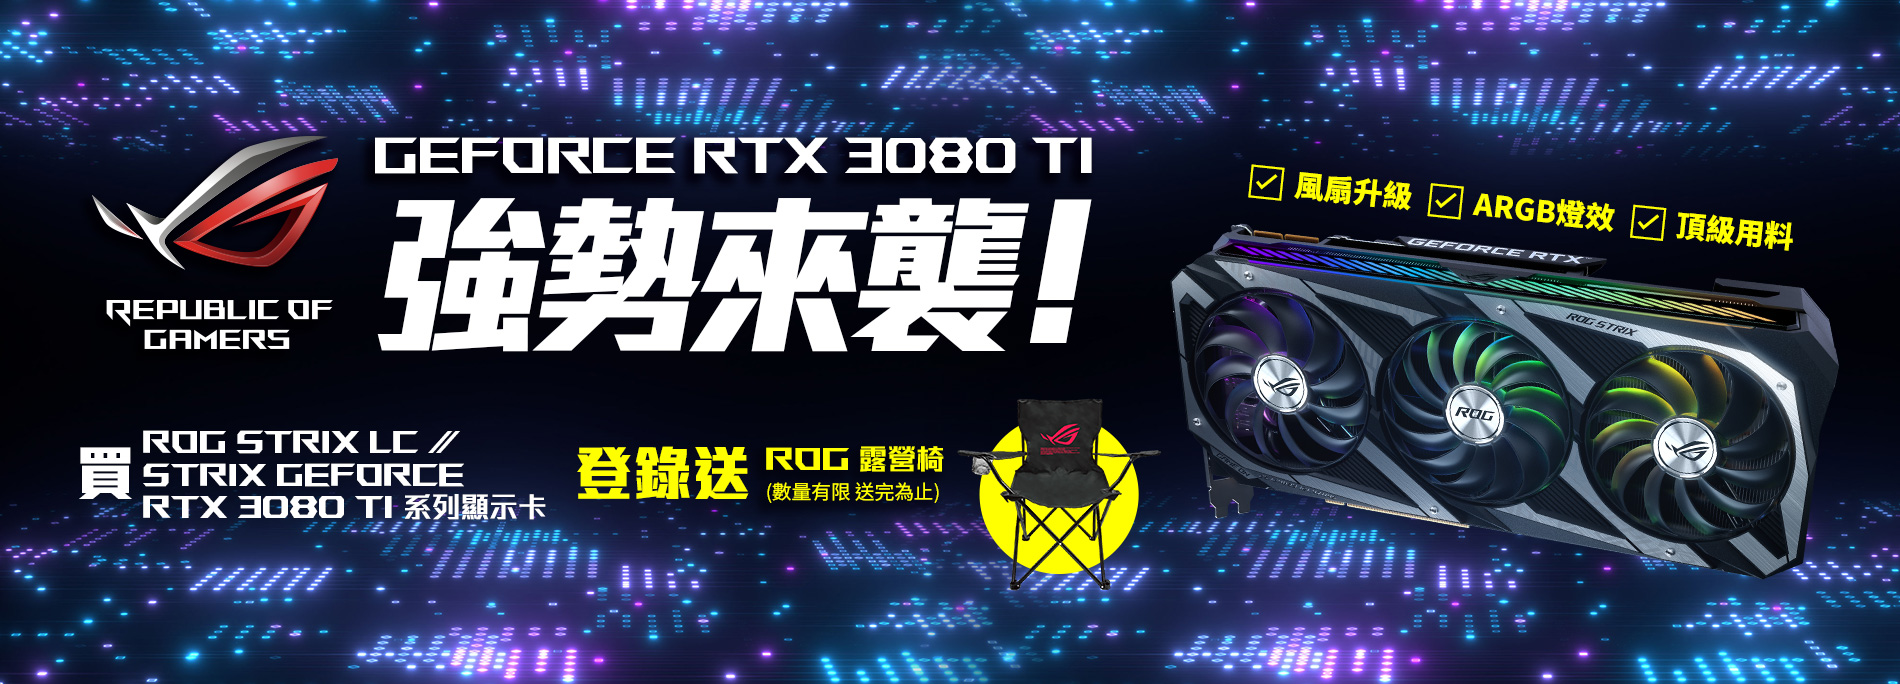 活動期間購買 ROG Strix LC /Strix GeForce® RTX 3080 Ti 系列顯示卡，官網登錄送『ROG 露營椅 』(數量有限，送完為止)